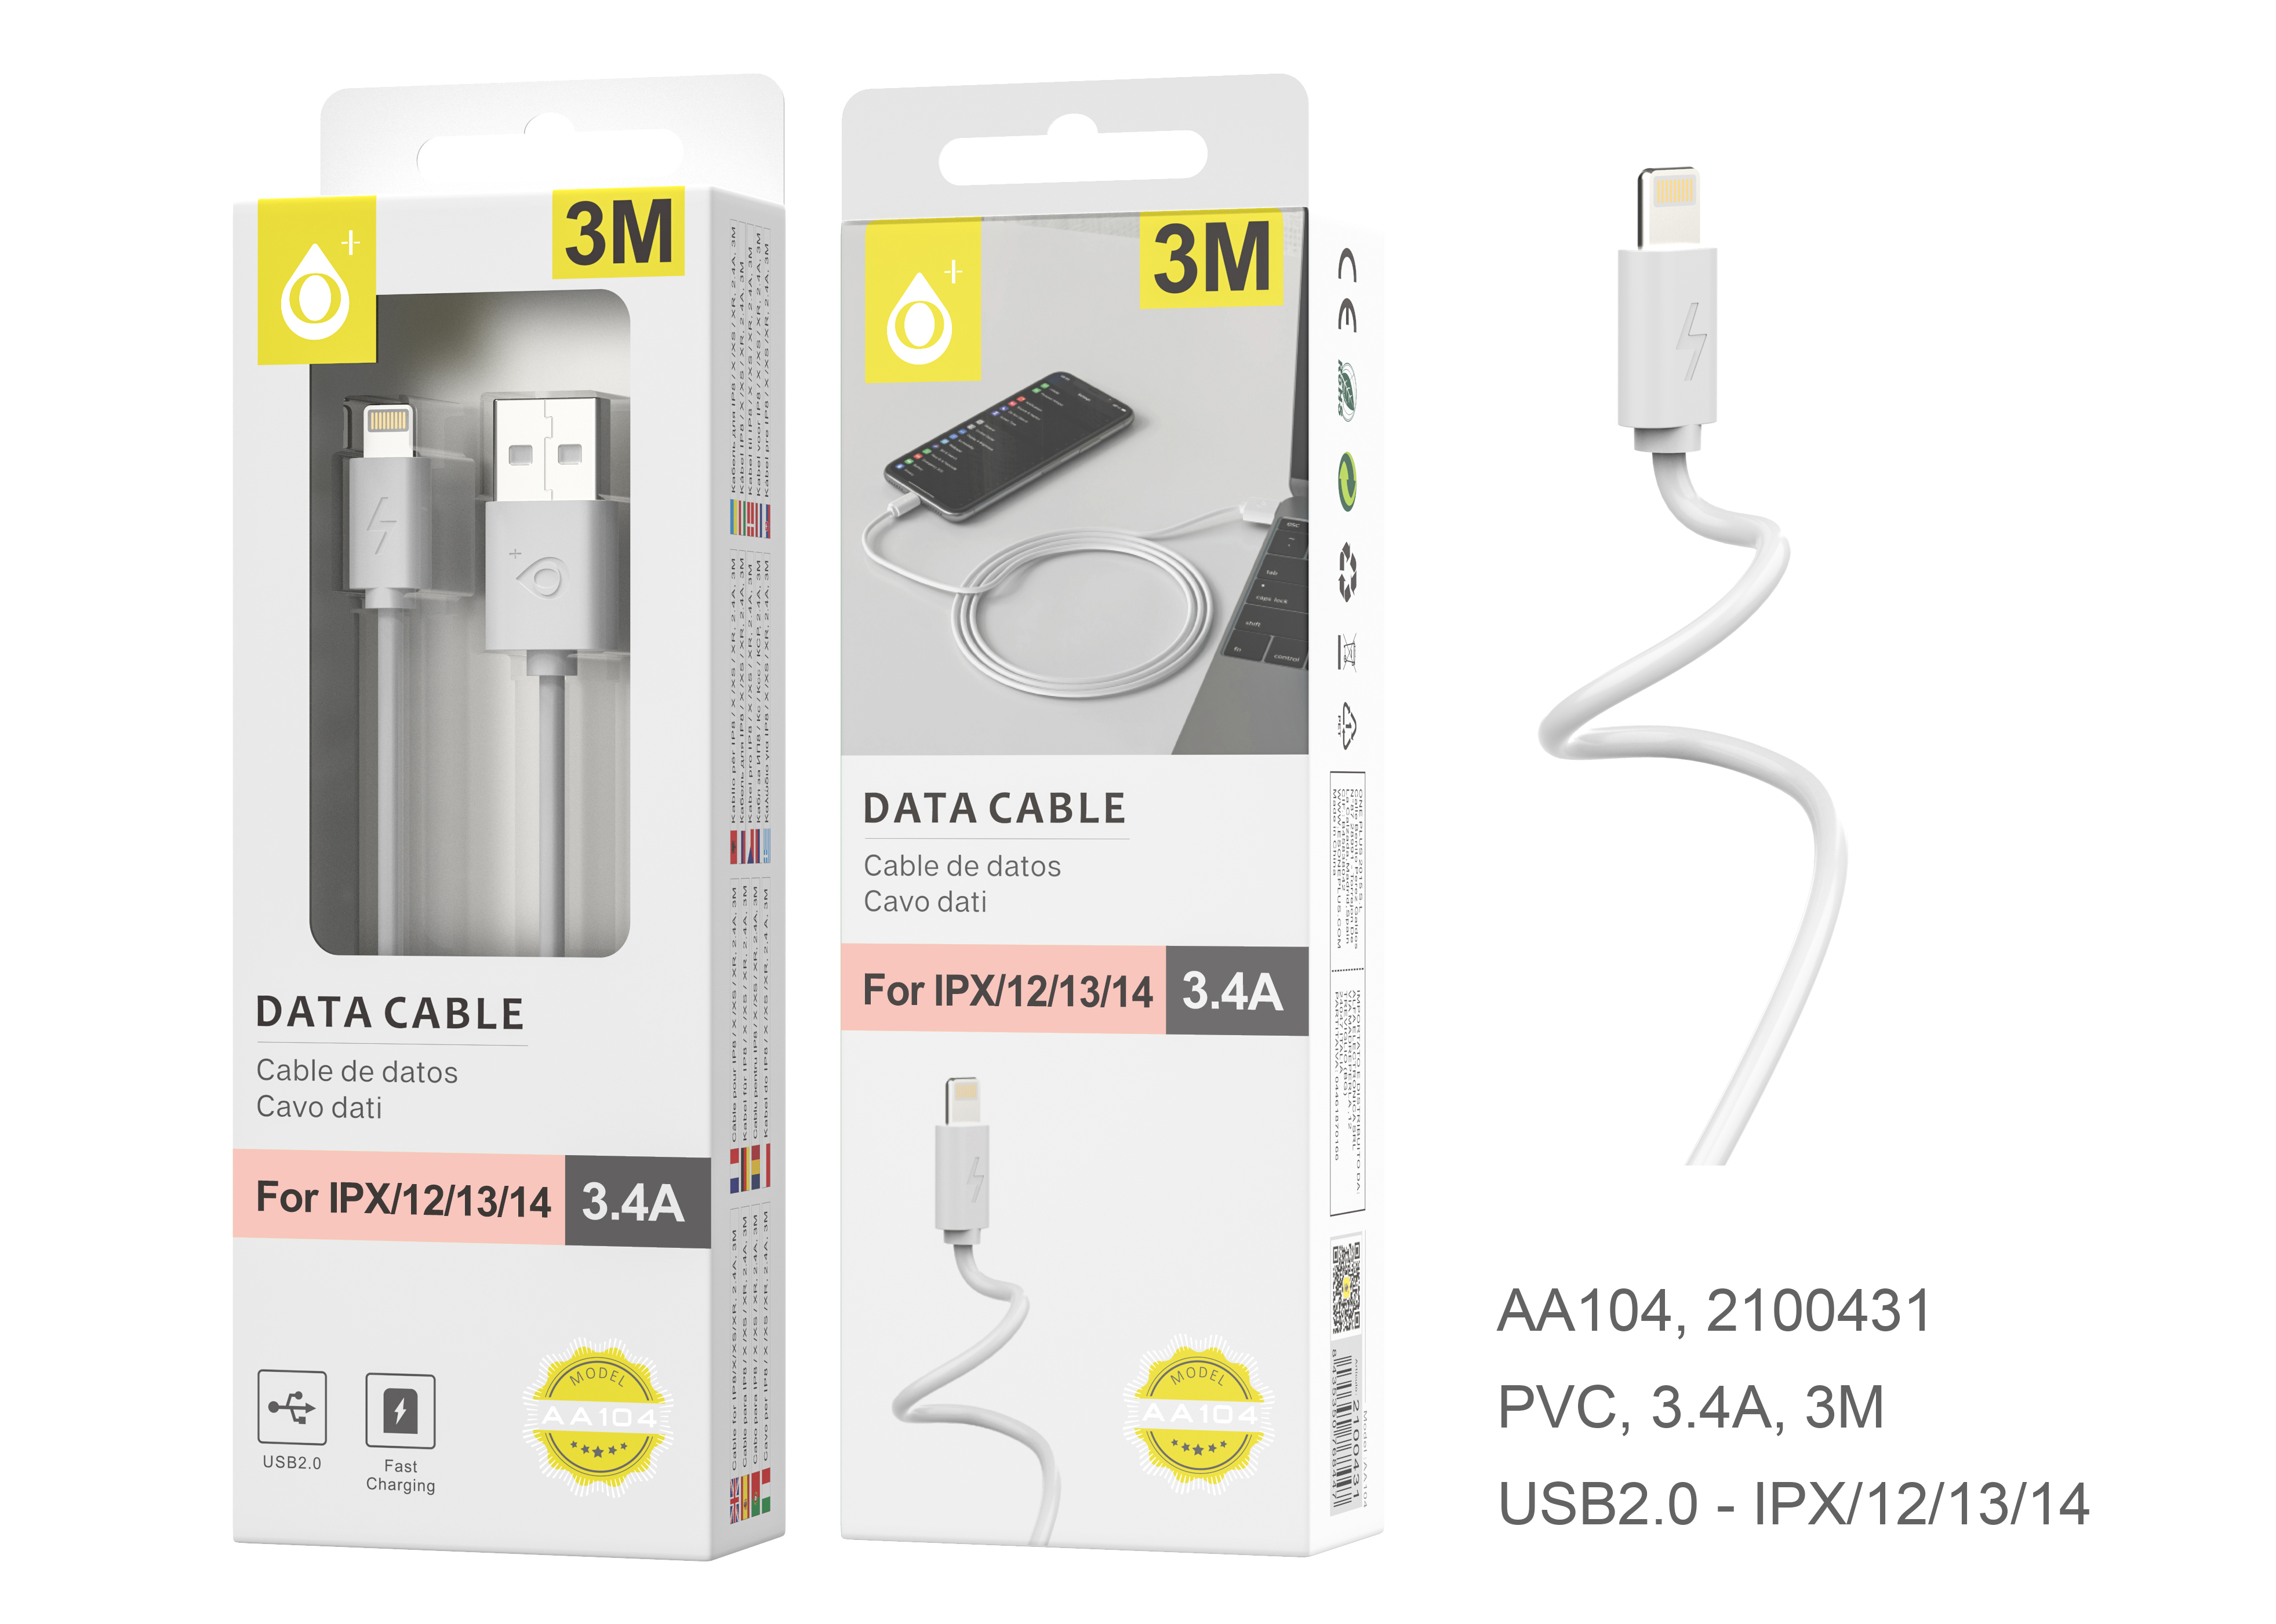 23101041 AA104-Cable de dato Para Iphone 6 2.4A, 3M Blanco